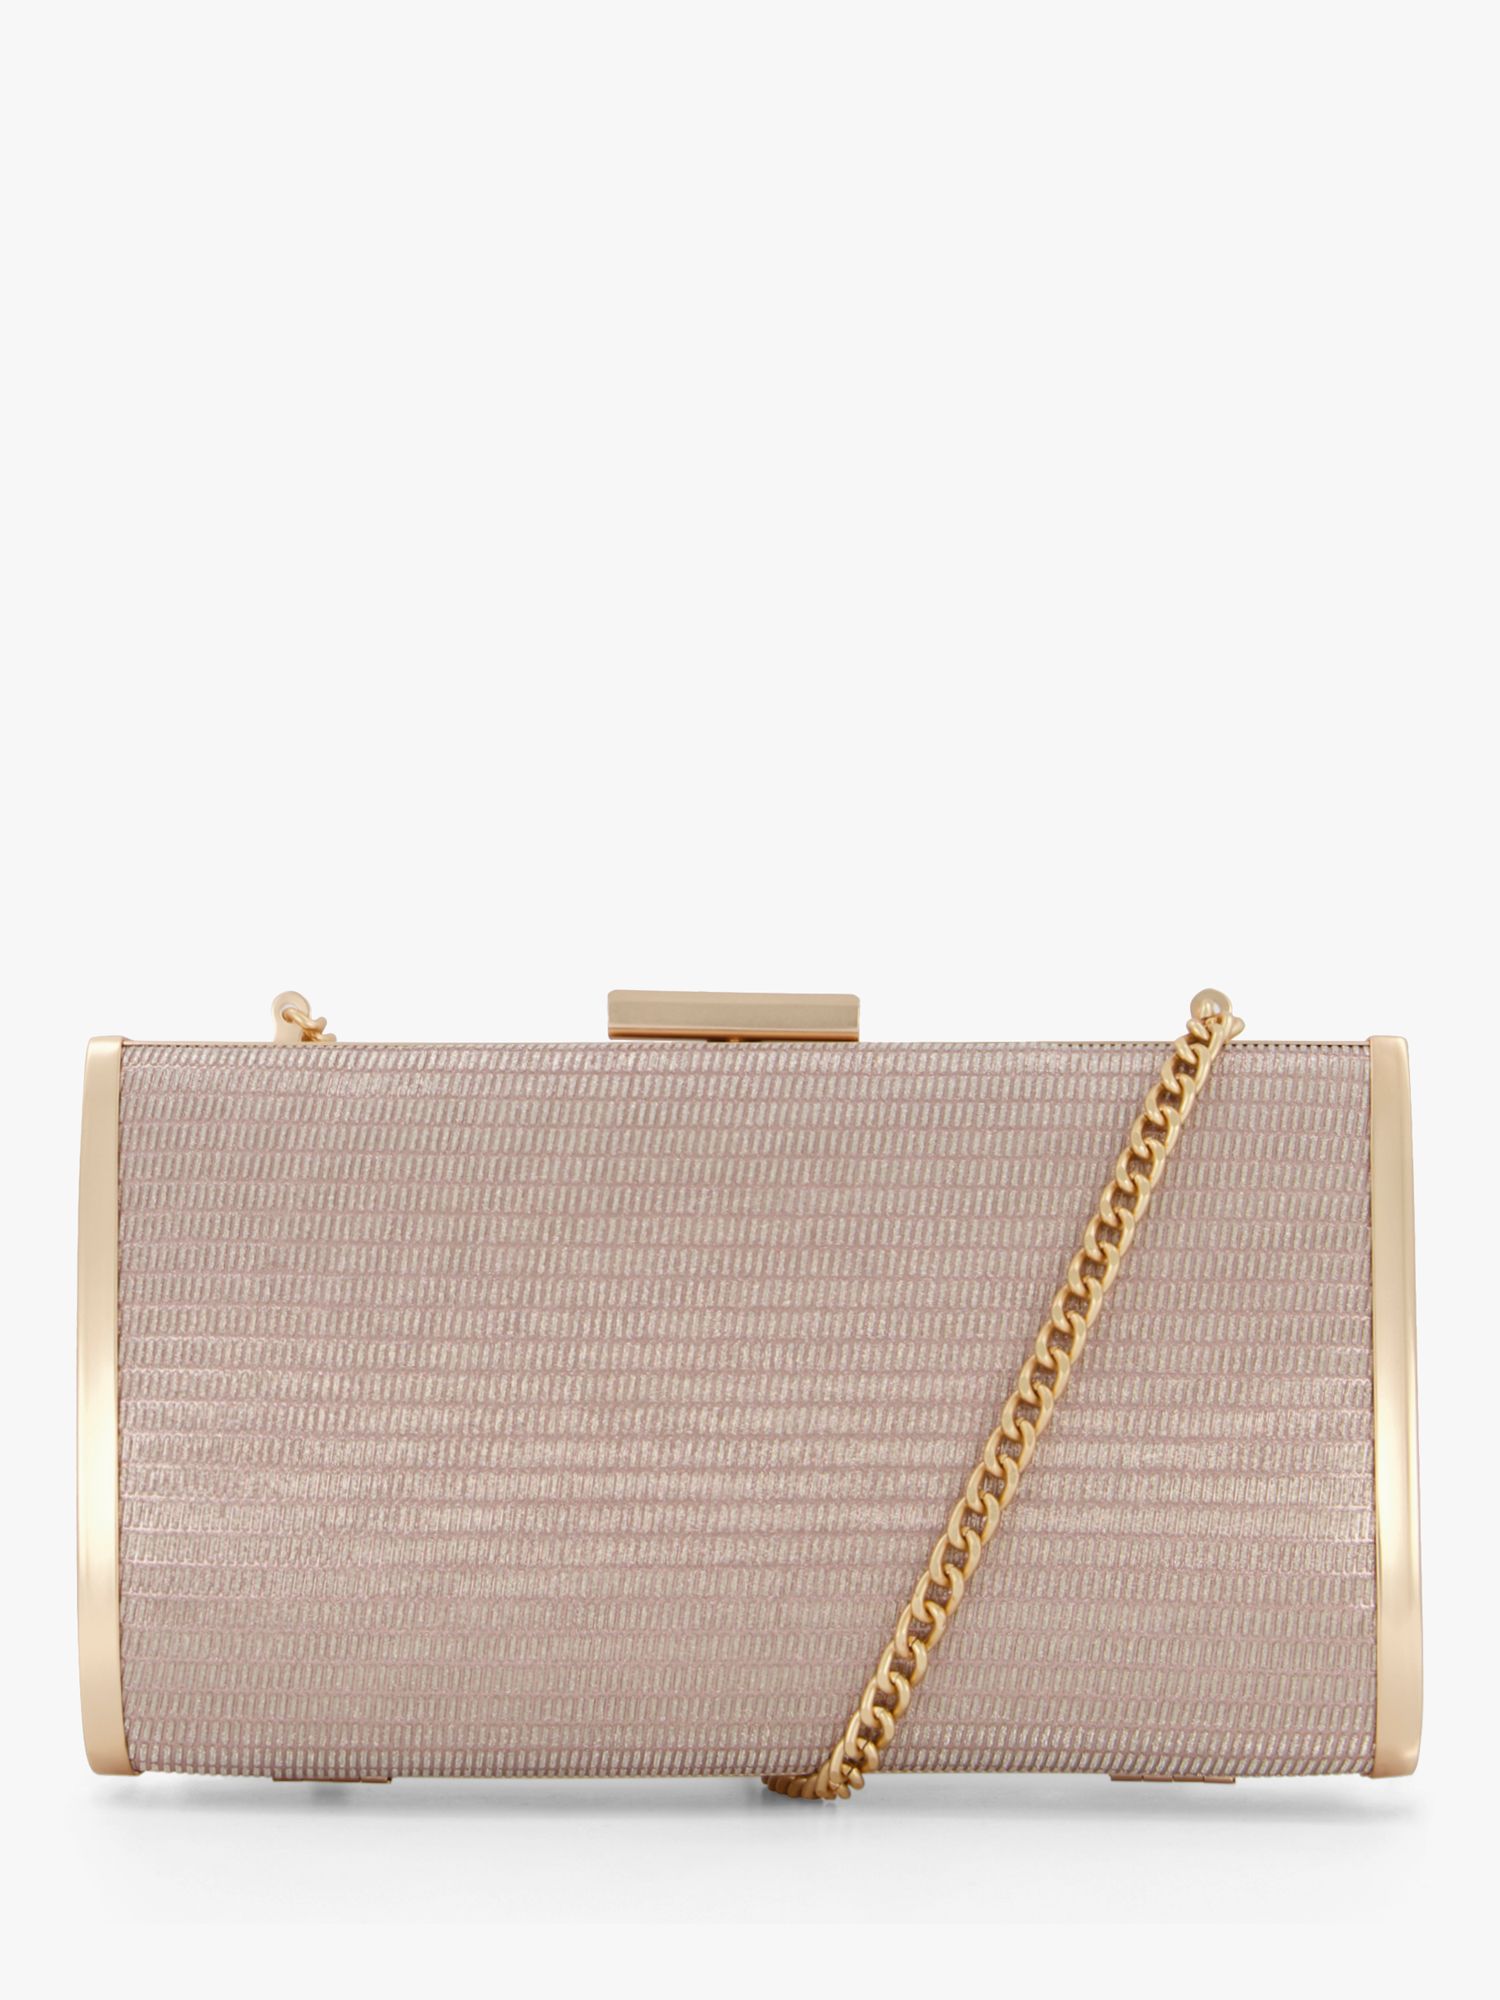 Pink Dune handbag with gold embellished details Damen Taschen Handtaschen DUNE Handtaschen 